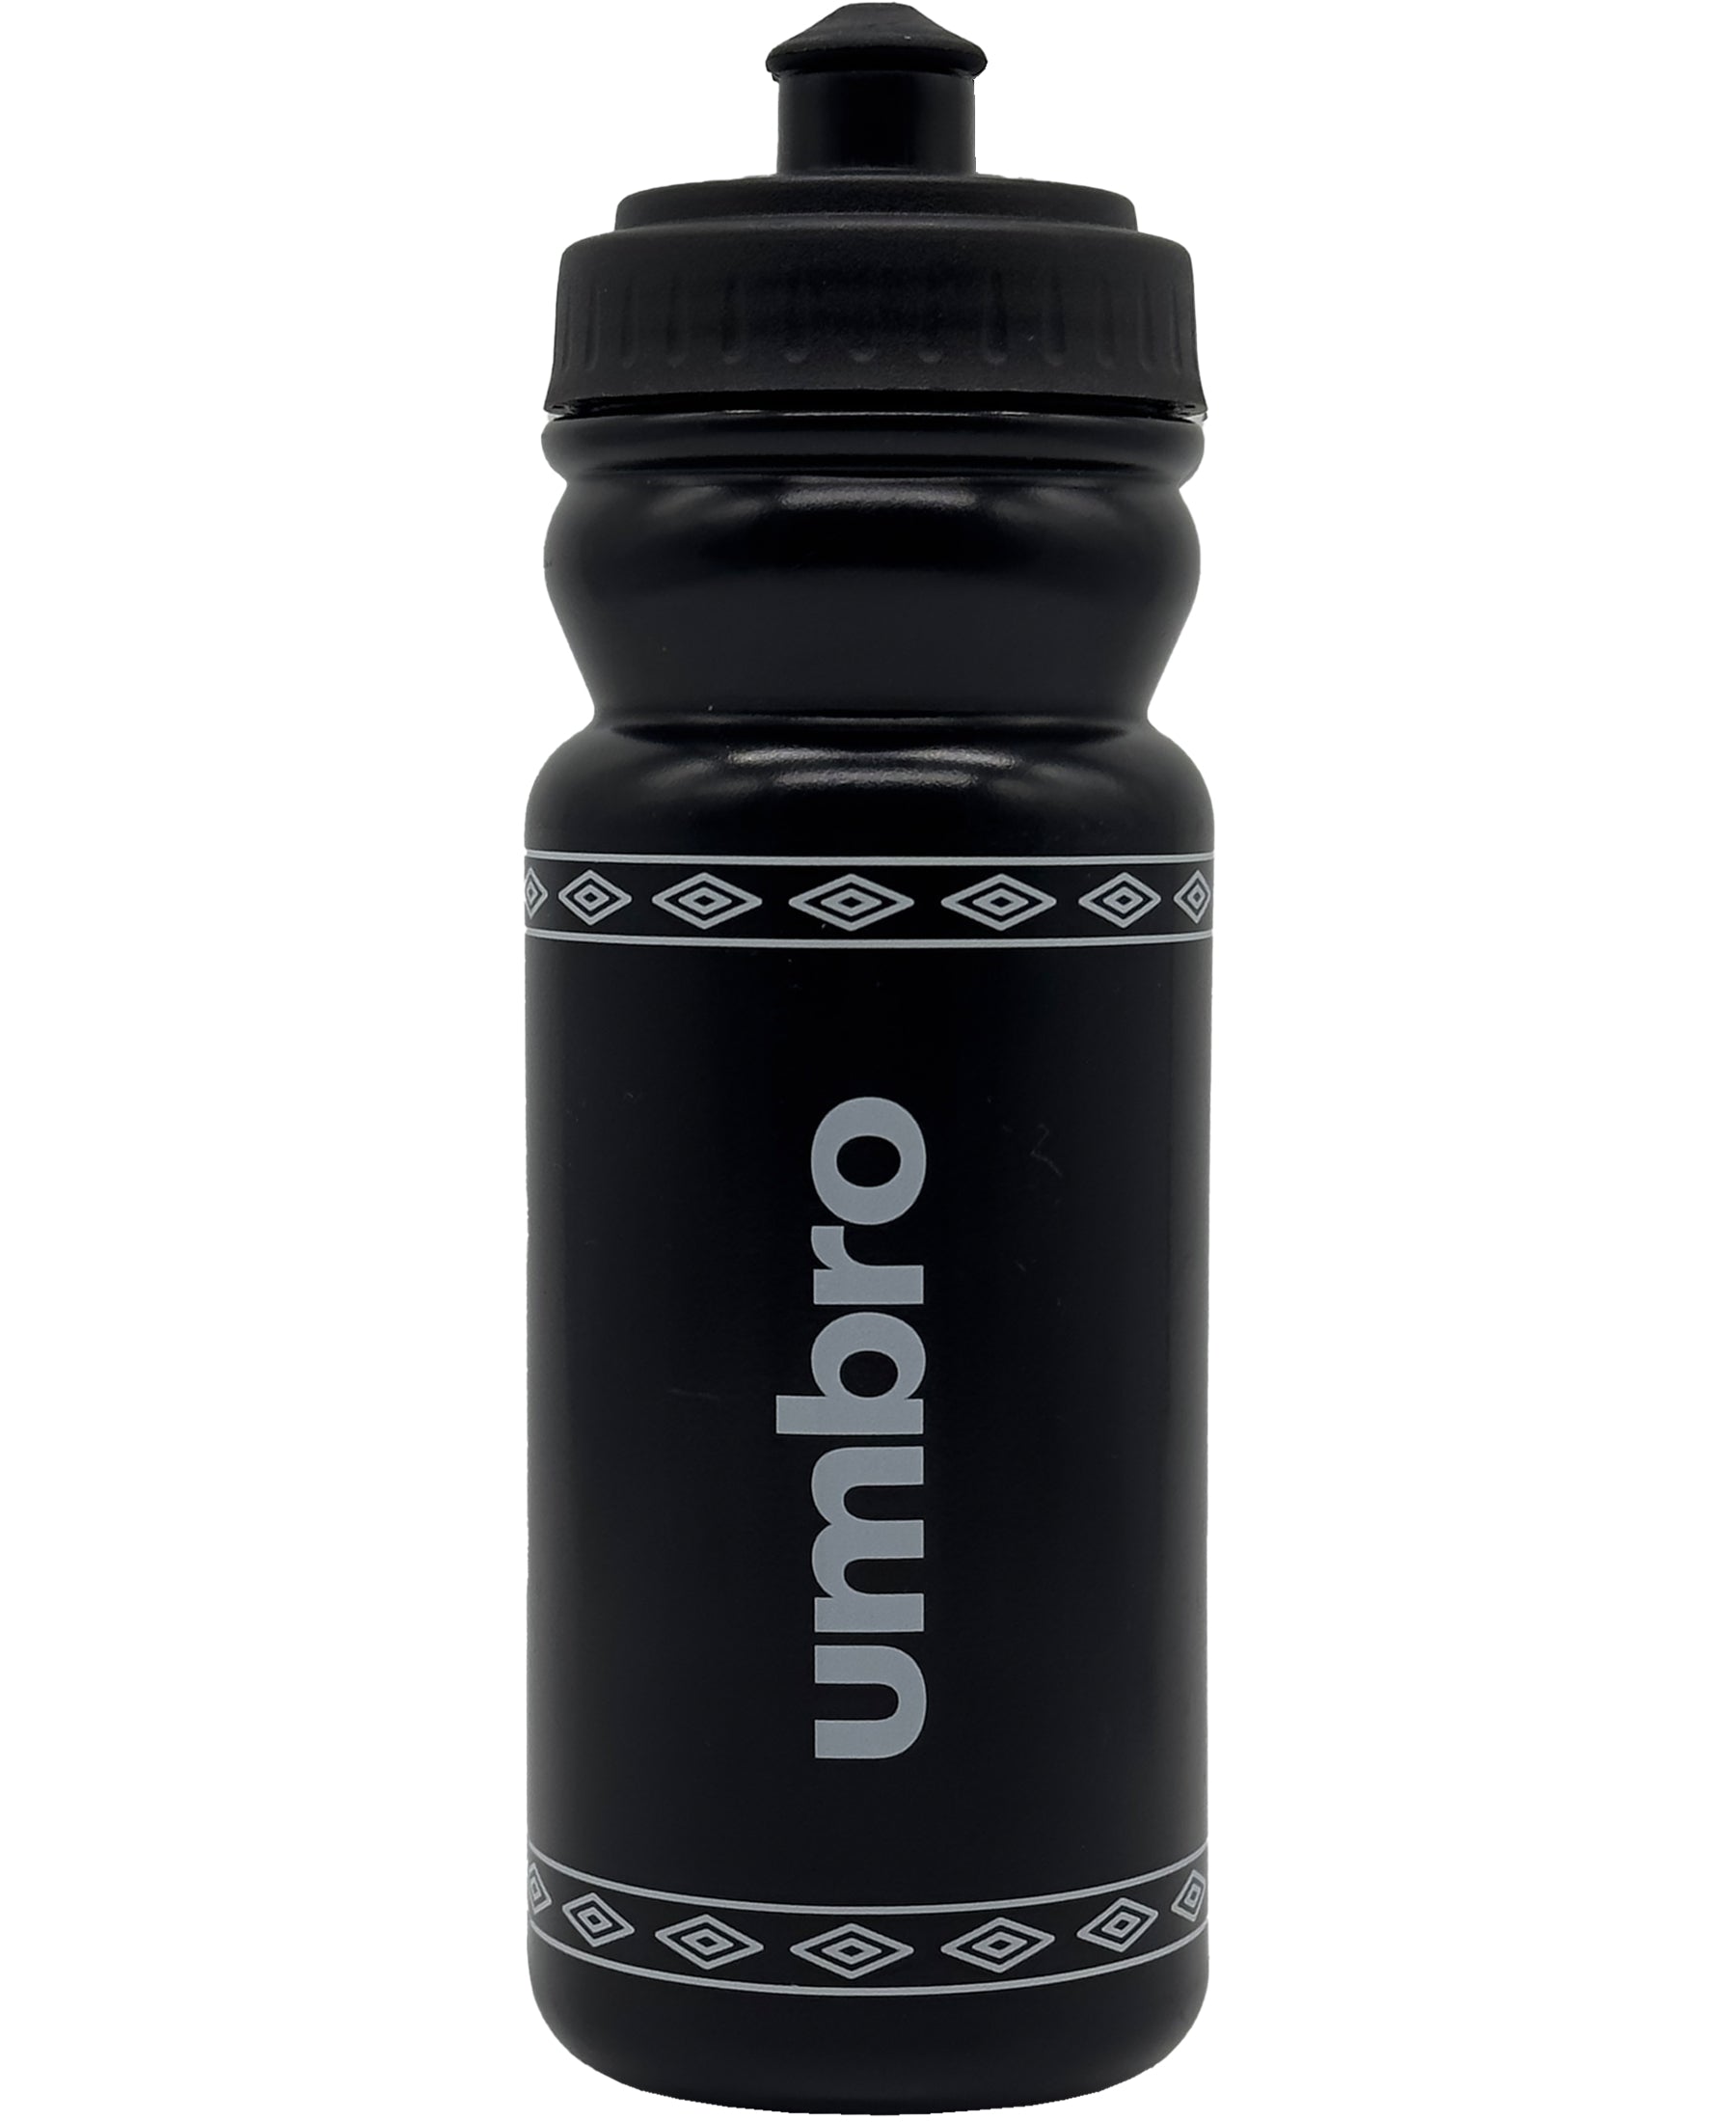 Bleib gut hydriert beim Training und Wettkampf mit der Umbro Bidon Bottle 0.5 Trinkflasche (UMAM0179-192). Praktisch und leicht, bei SHOP4TEAMSPORT erhältlich. Hol sie dir noch heute, um deinen Durst zu löschen und deine Leistung zu steigern.